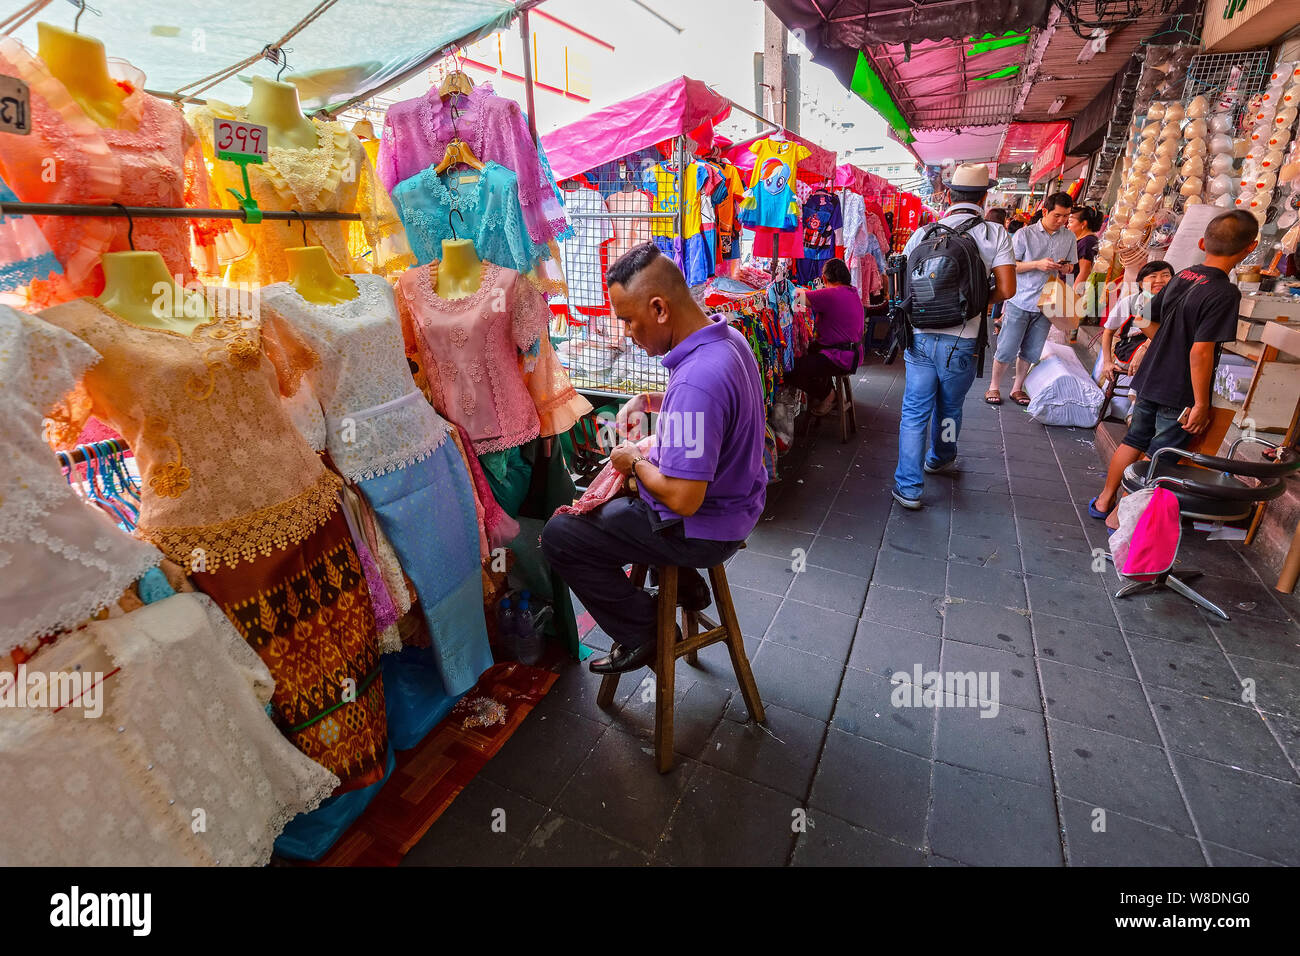 BANGKOK, THAÏLANDE - 22 déc 2018 : personnes non identifiées à la boutique un marché dans Little India. Little India est un quartier ethnique entourant Phahurat R Banque D'Images